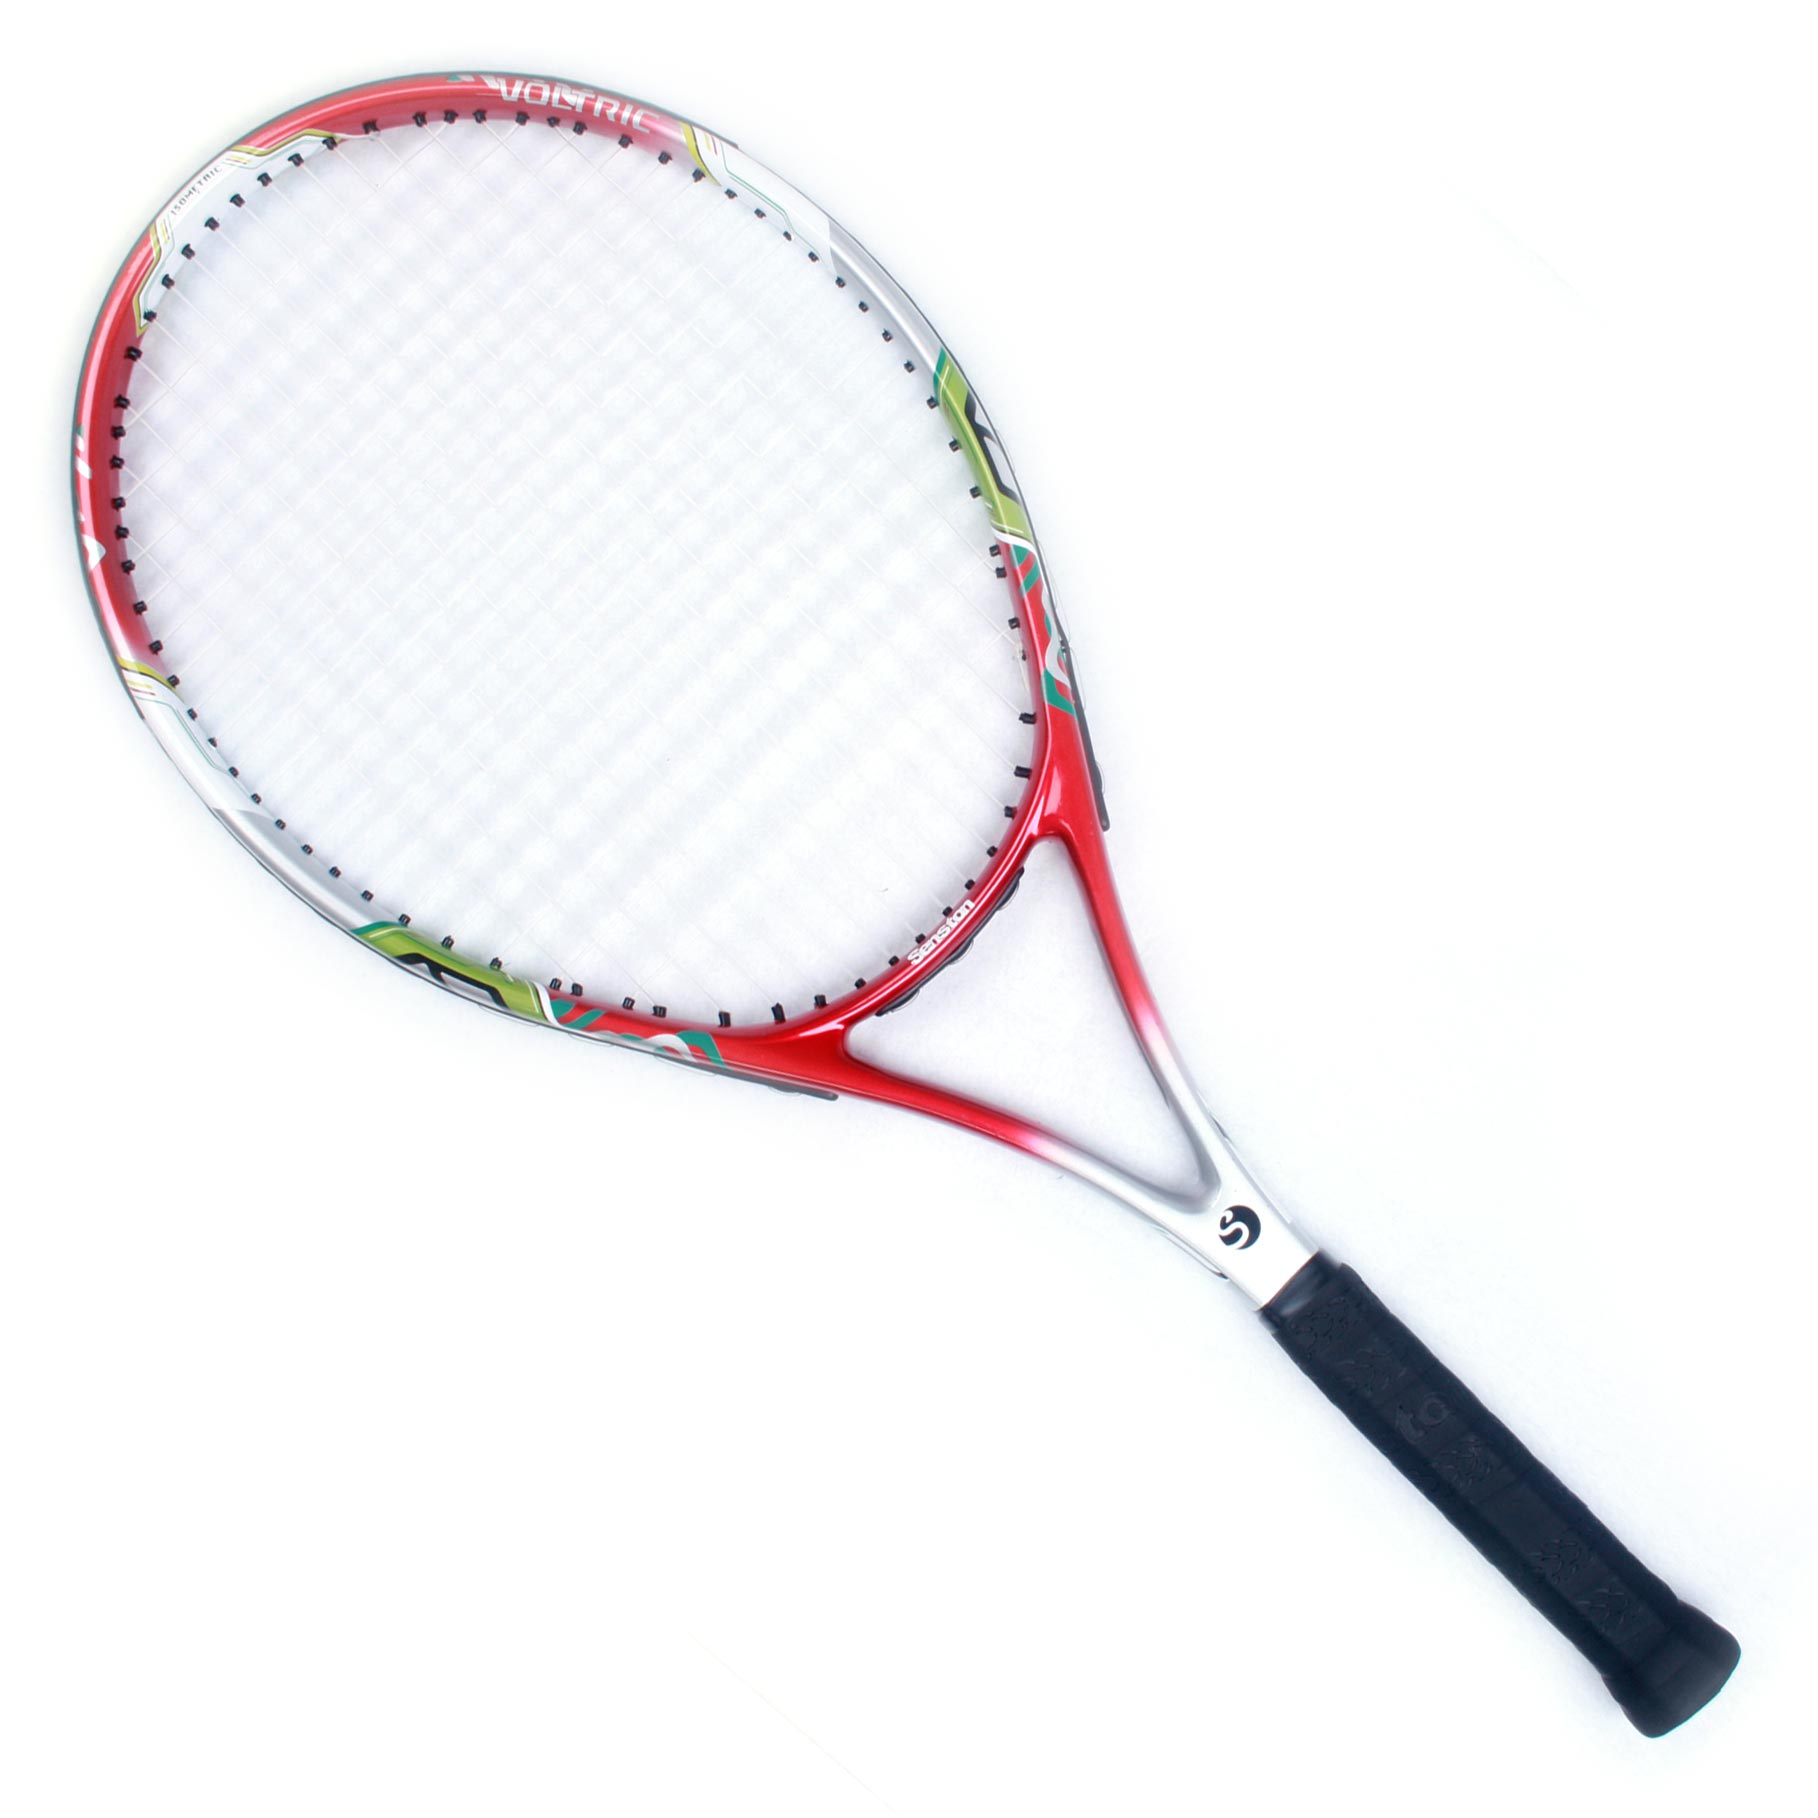 senston/圣斯顿 VT-ZF红色碳素网球拍正品 网拍 男士女士初学